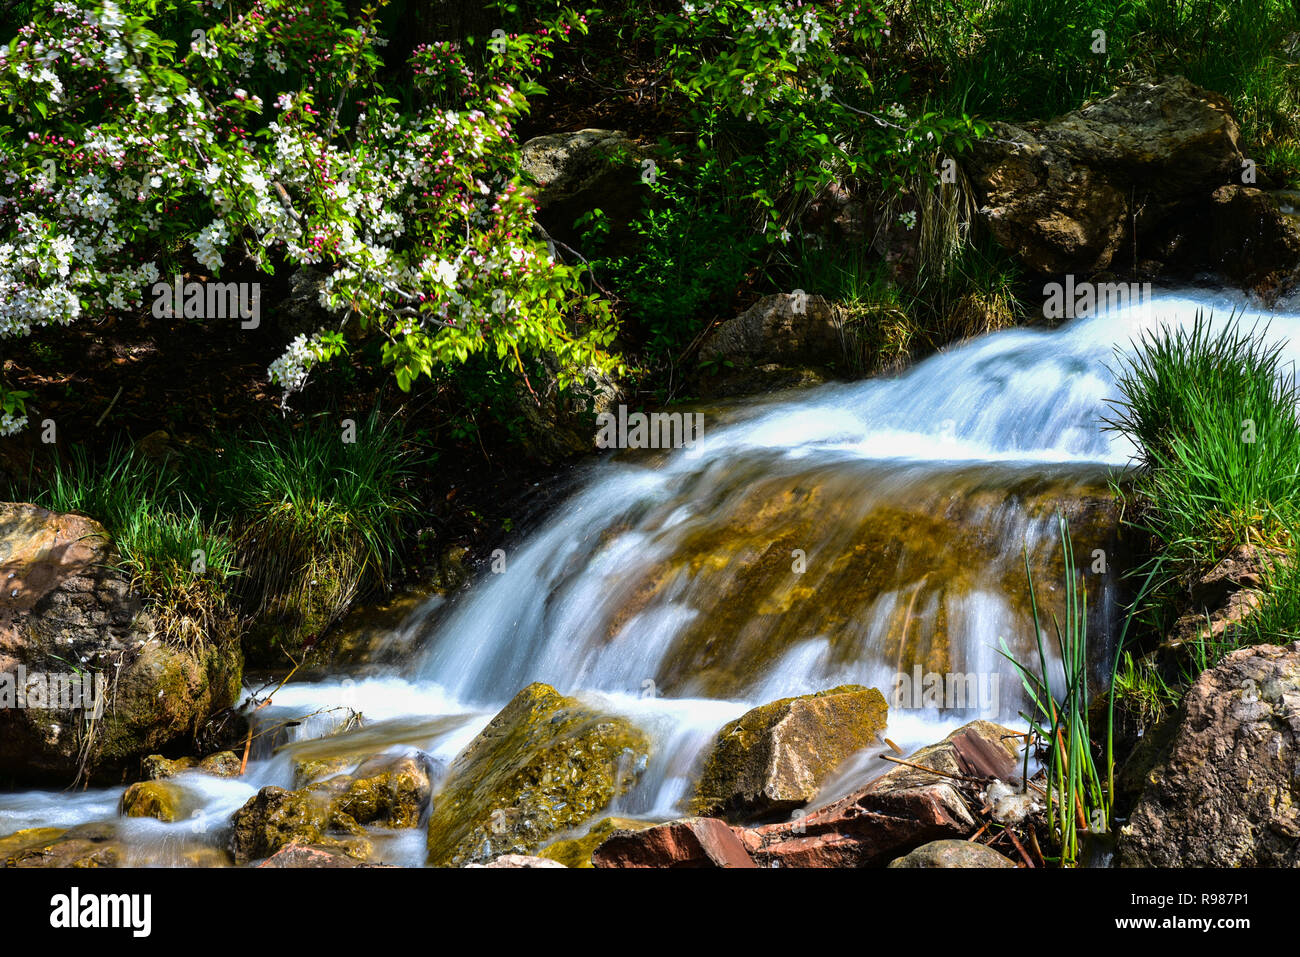 La cascata di fiori e di percorso in un ambiente da giardino. Foto Stock